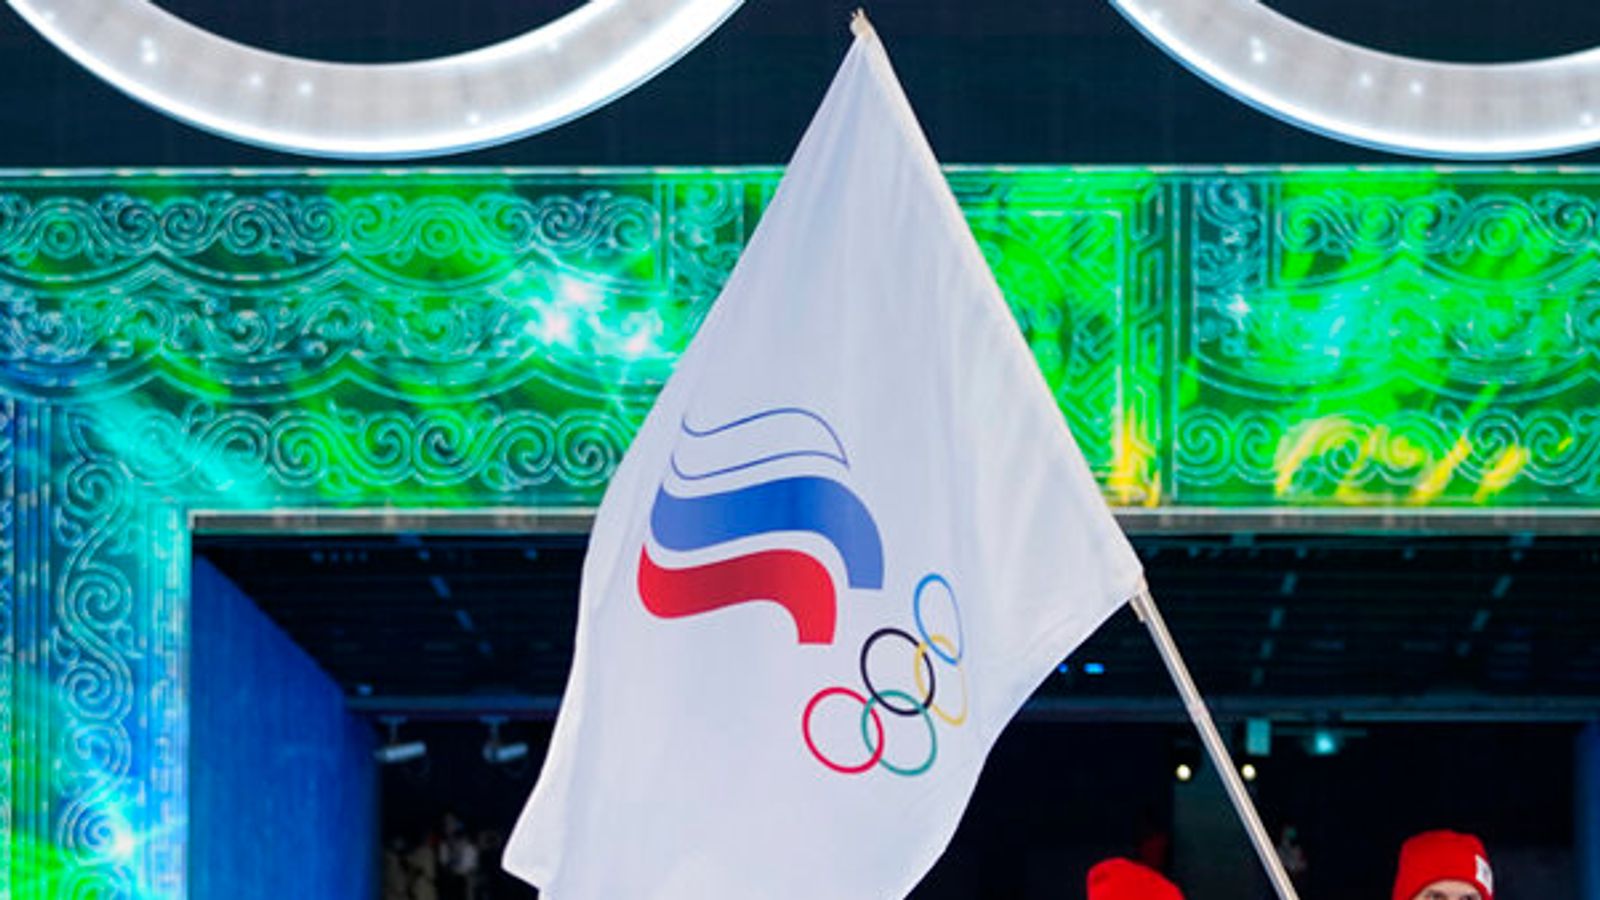 Les athlètes russes restent interdits d’athlétisme dans un “avenir prévisible”, a déclaré le chef de World Athletics, Lord Coe |  Nouvelles d’athlétisme